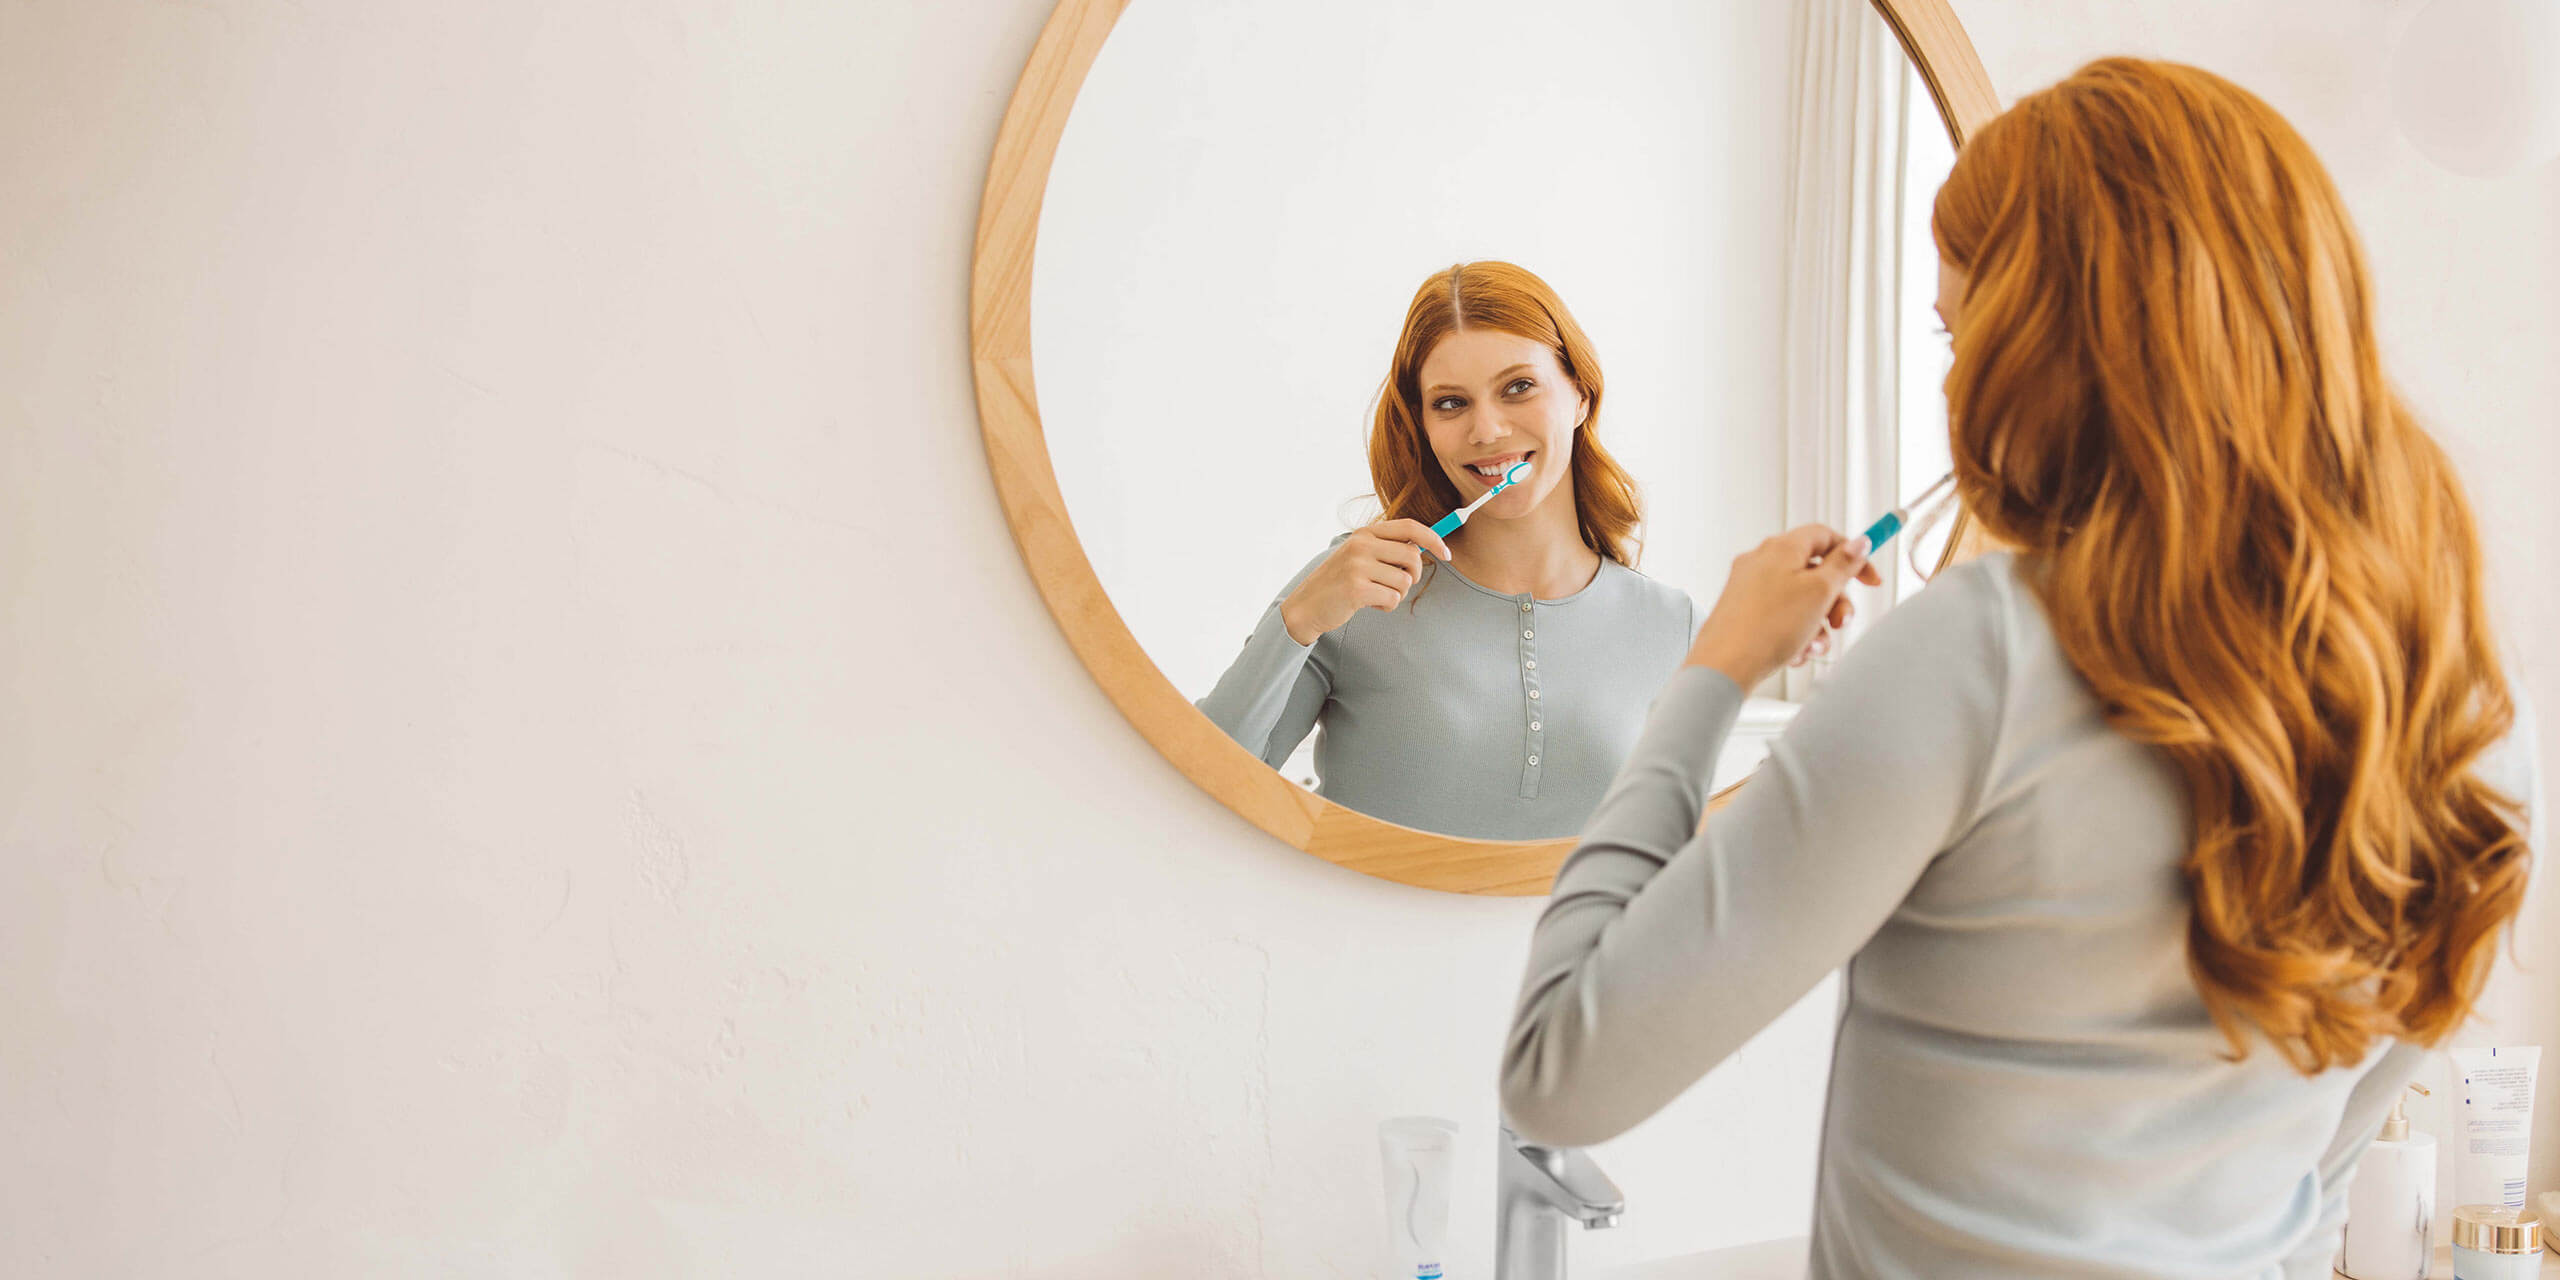 Eine Frau mit roten Haaren putzt sich die Zähne und betrachtet dabei ihr Spiegelbild in einem runden Badezimmerspiegel.